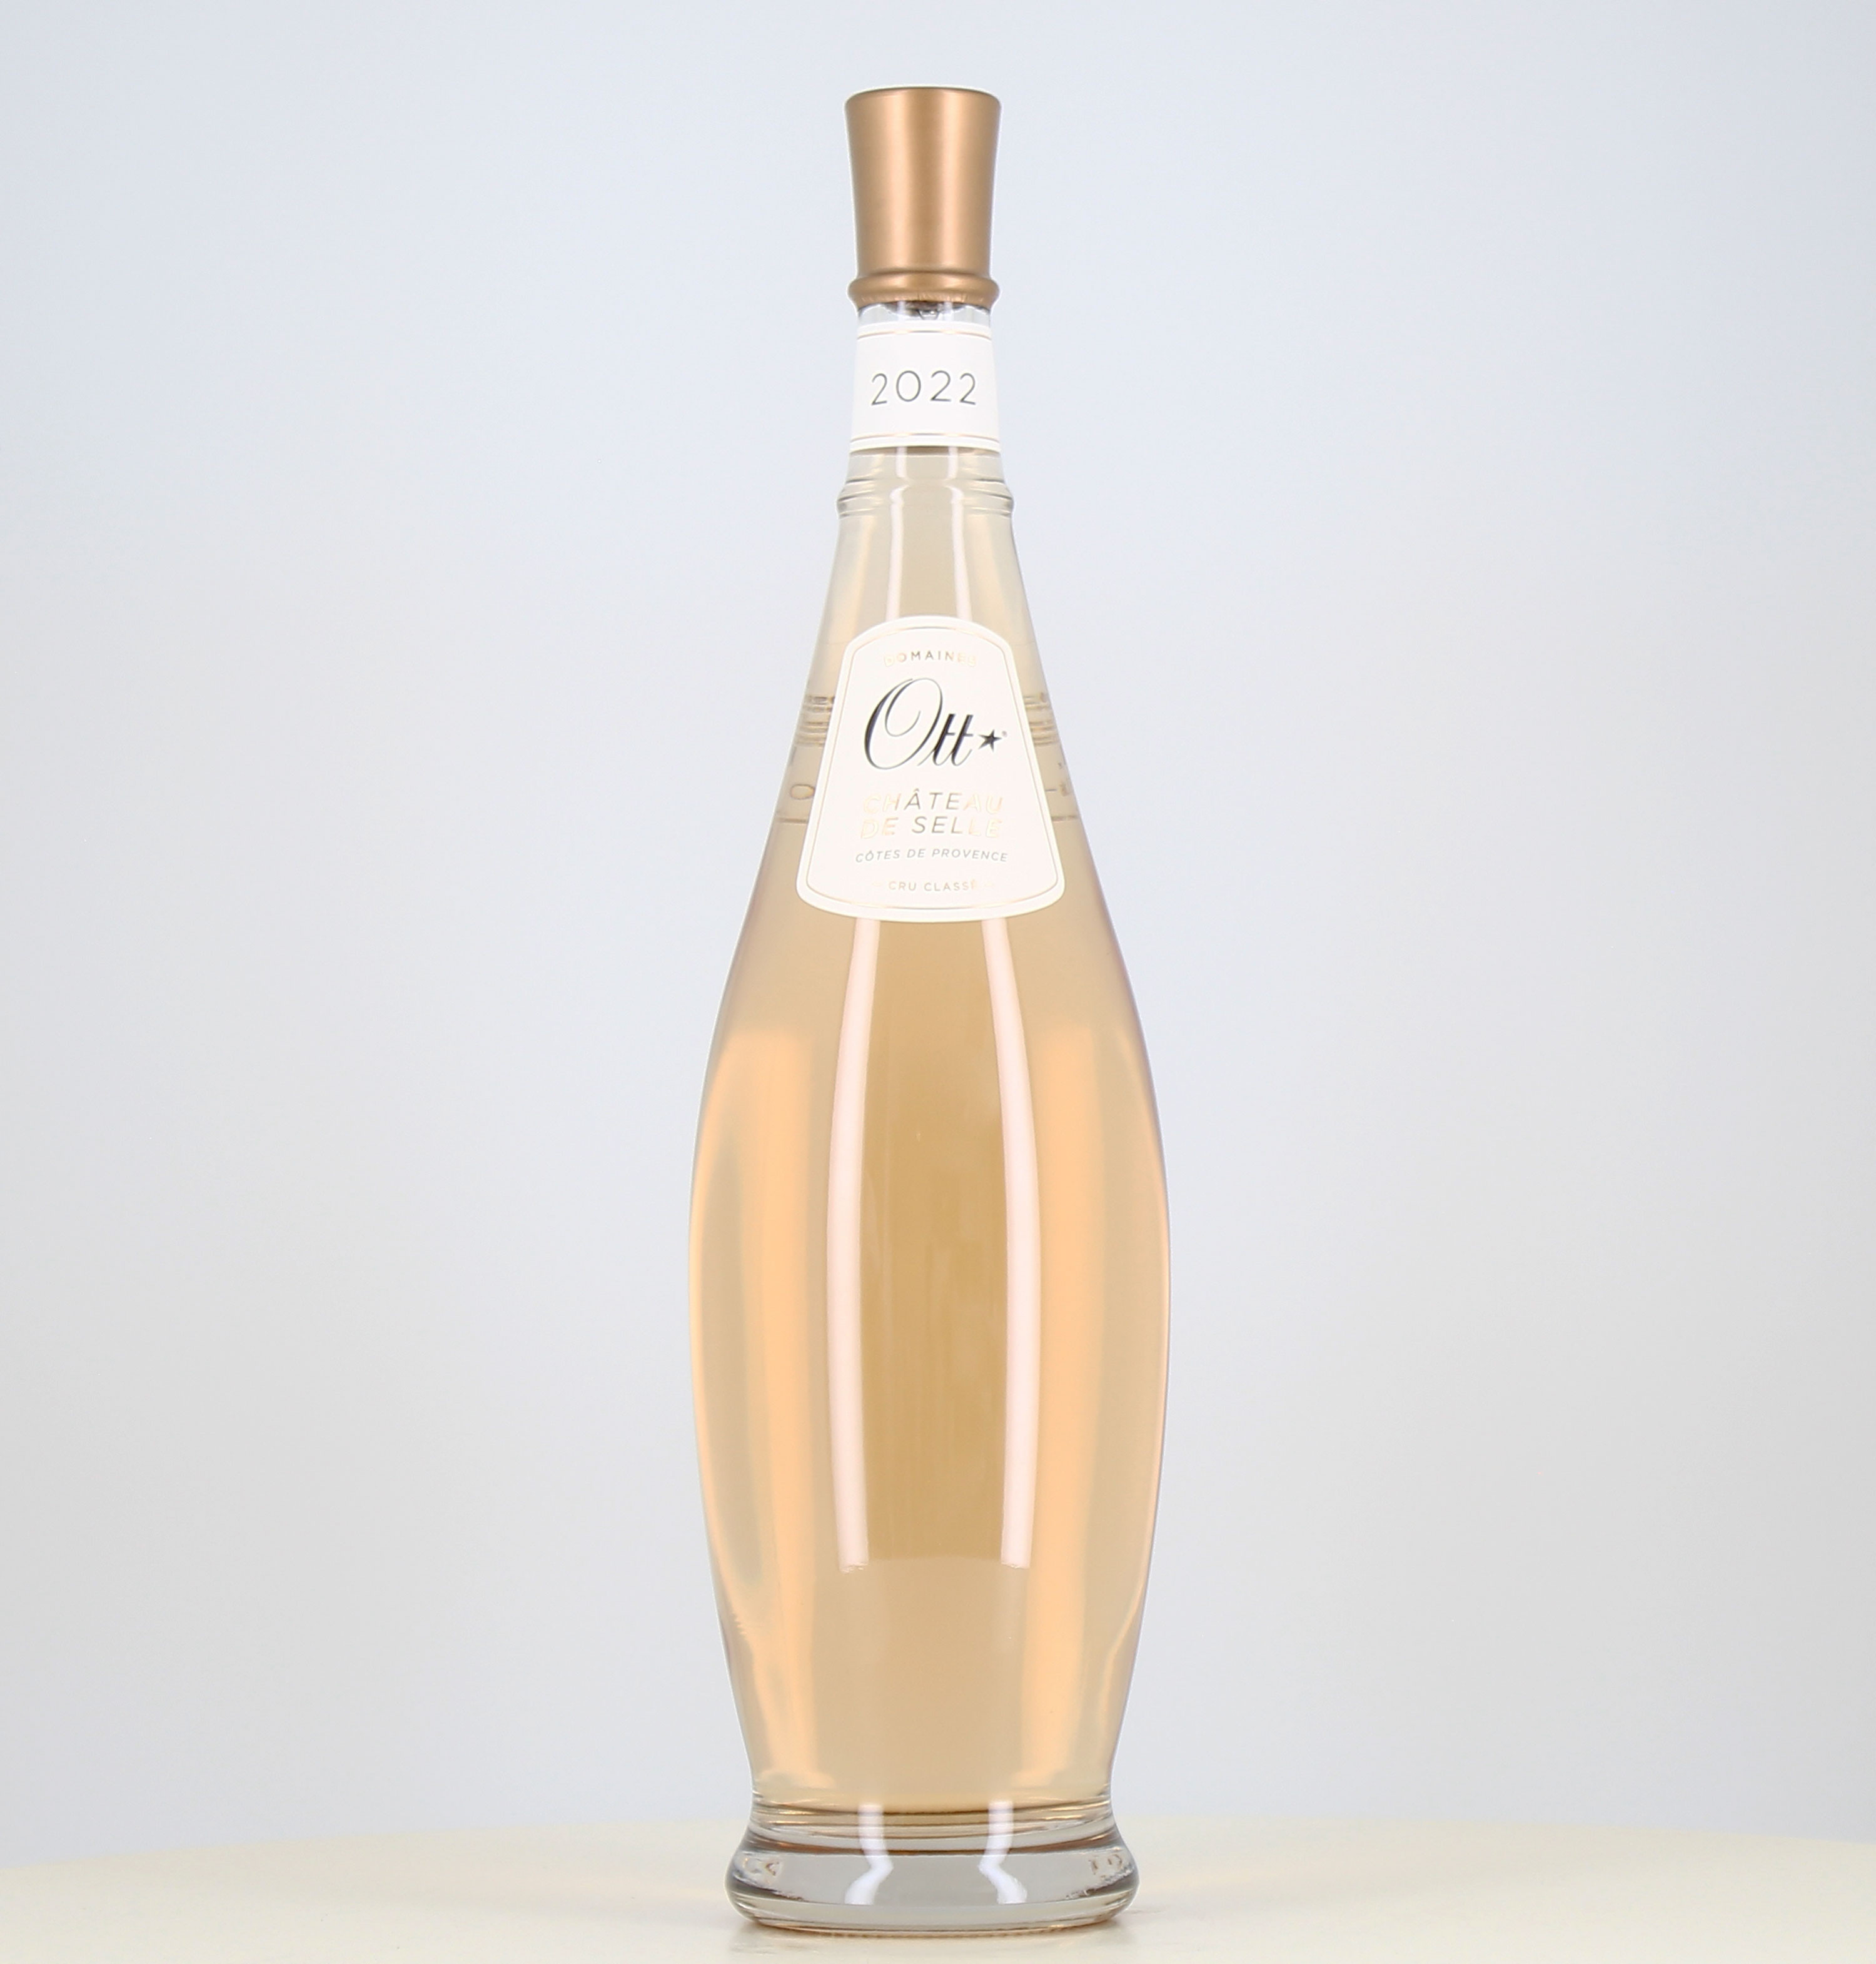 Jéroboam di vino rosato Ott Côtes de Provence Château de Selle 2022 